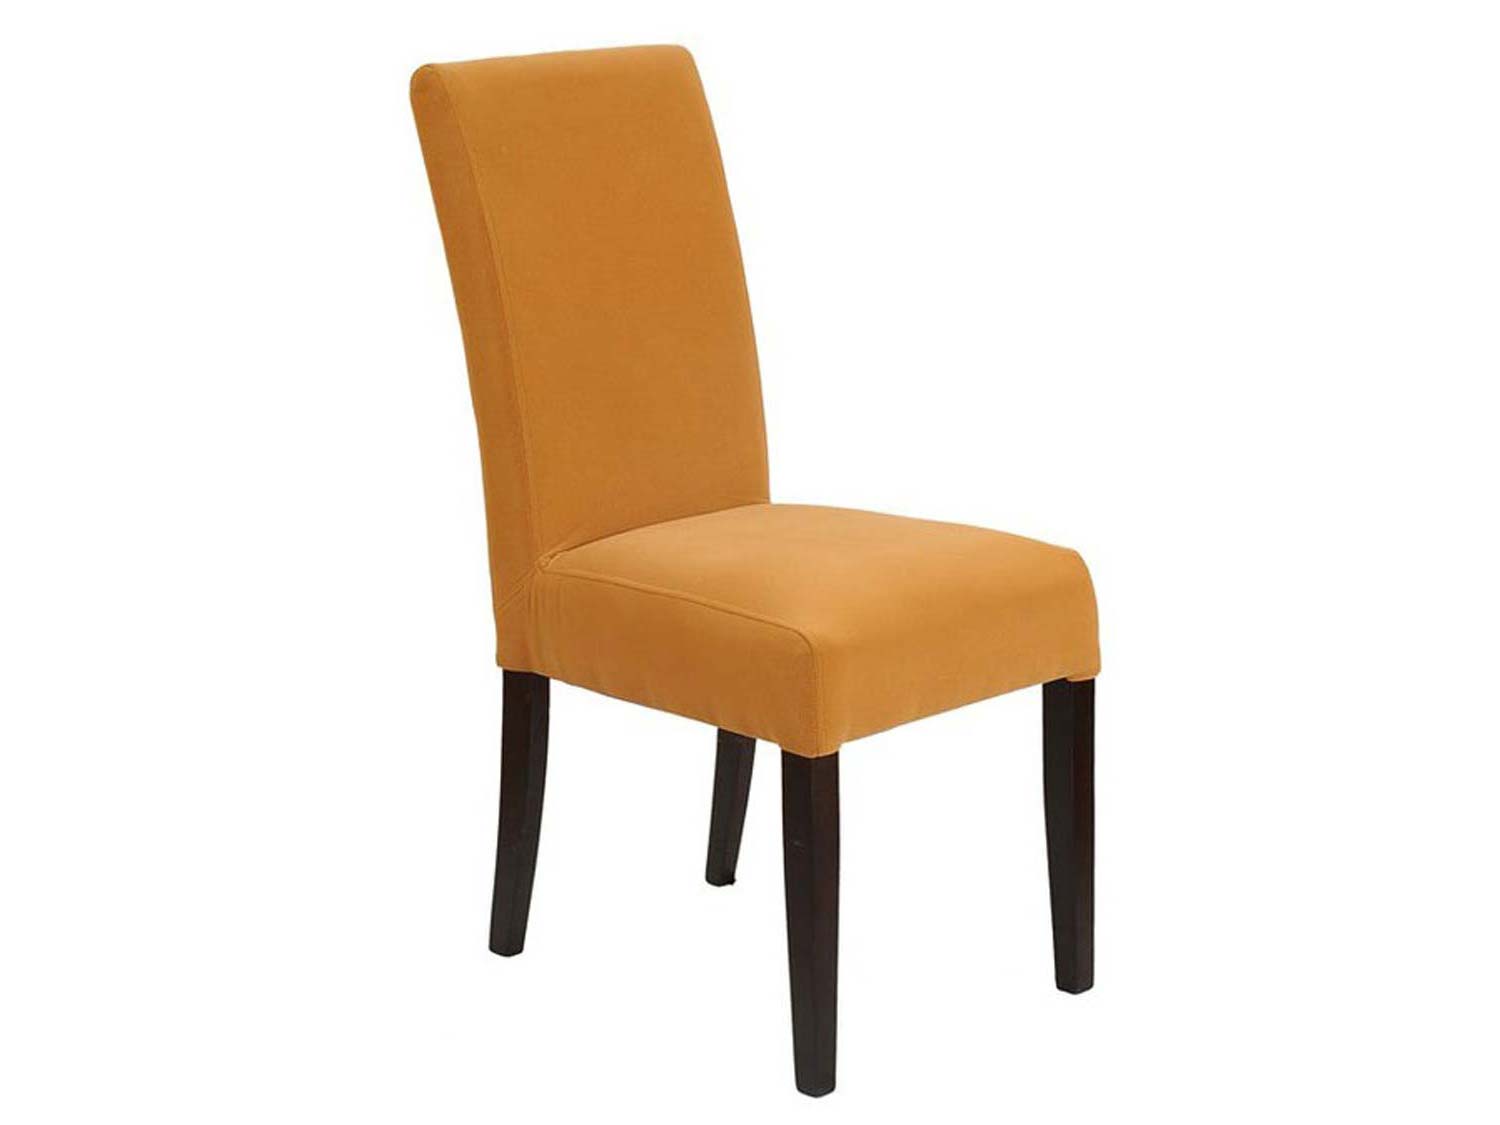 Miękkie wygodne krzesło pomarańczowe